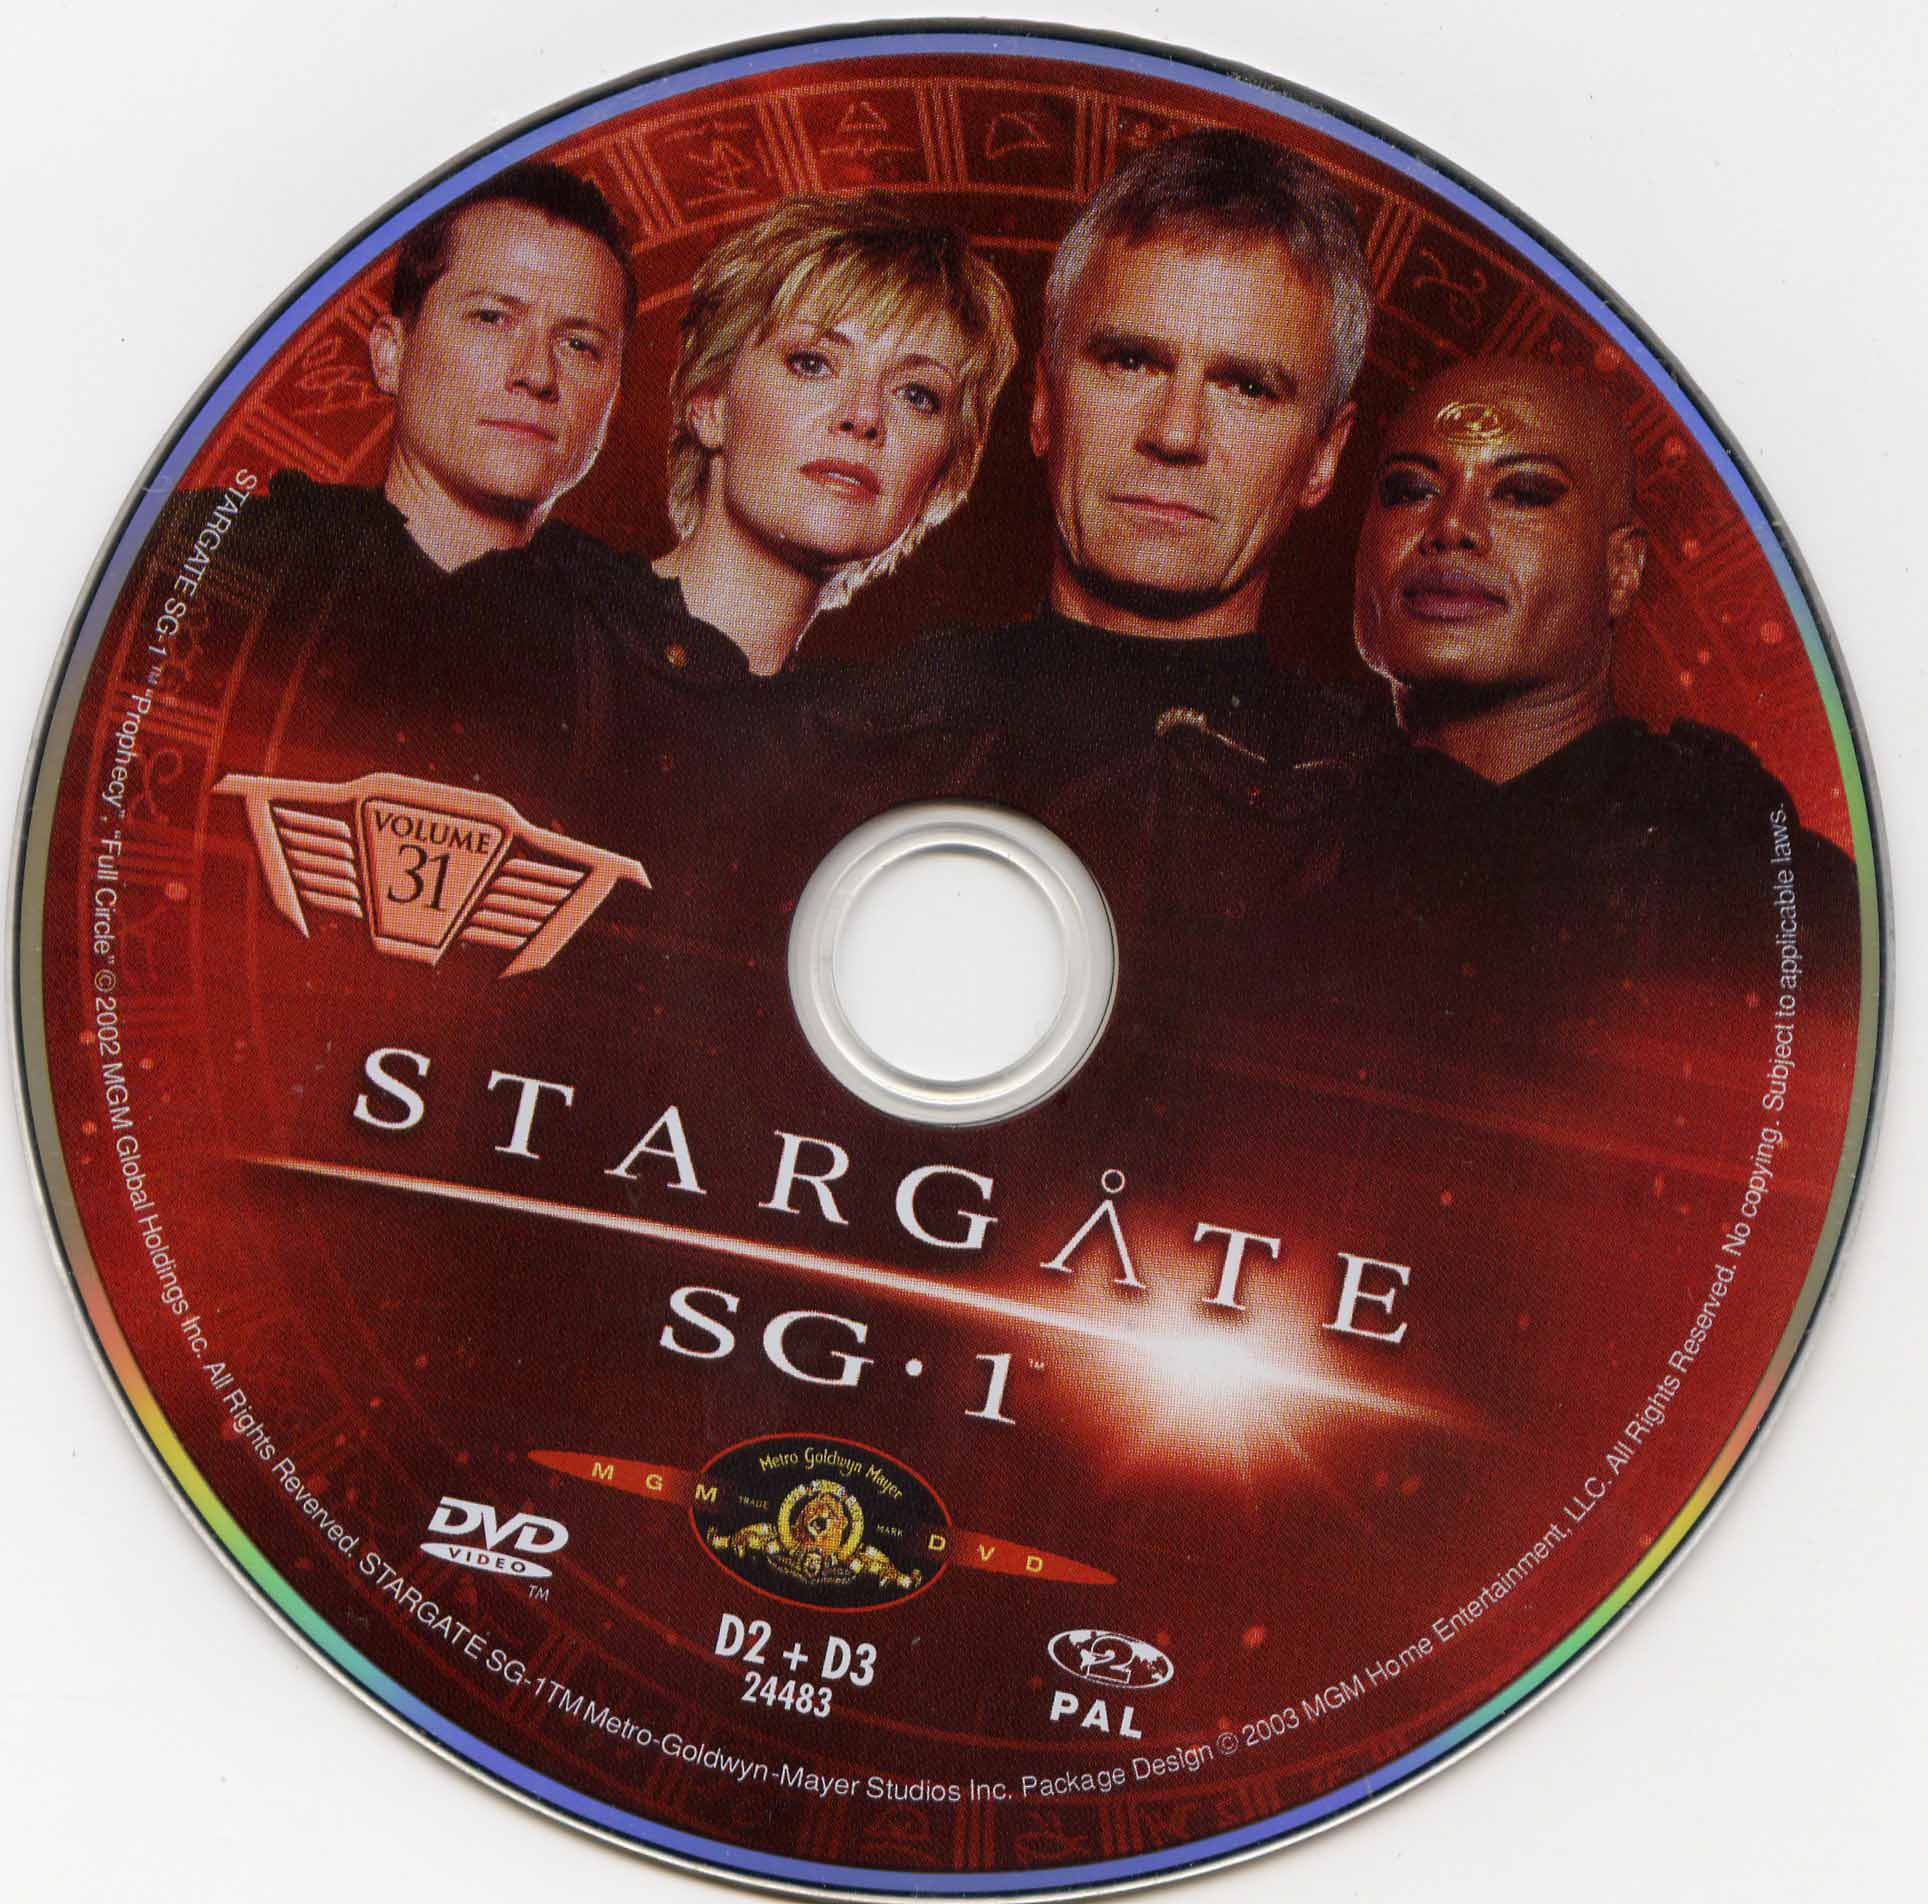 Stargate SG1 vol 31